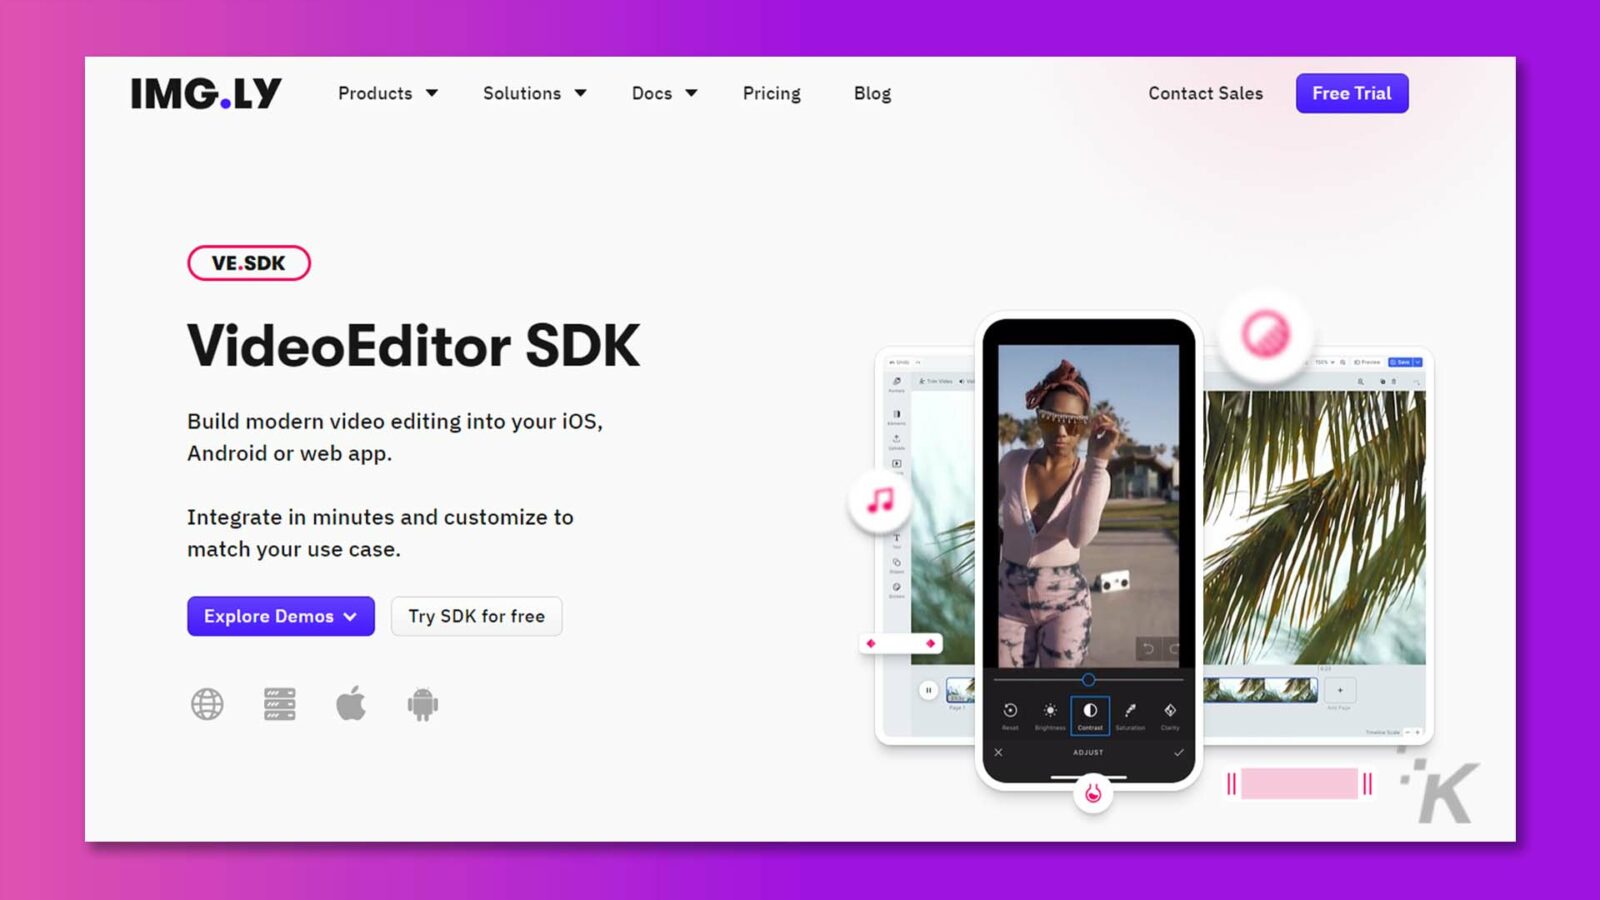 รูปภาพกำลังโฆษณา VideoEditor SDK ที่สามารถรวมเข้ากับ iOS, Android และเว็บแอปเพื่อเปิดใช้งานความสามารถในการตัดต่อวิดีโอสมัยใหม่ ข้อความแบบเต็ม: IMG.LY ผลิตภัณฑ์ โซลูชัน เอกสาร ราคา บล็อก ติดต่อฝ่ายขาย ทดลองใช้ฟรี VE.SDK VideoEditor SDK 01 สร้างการตัดต่อวิดีโอที่ทันสมัยใน iOS, Android หรือเว็บแอปของคุณ ผสานรวมในไม่กี่นาทีและปรับแต่งให้ตรงกับกรณีการใช้งานของคุณ T - Explore Demos v ทดลองใช้ SDK ฟรี X ปรับ K =